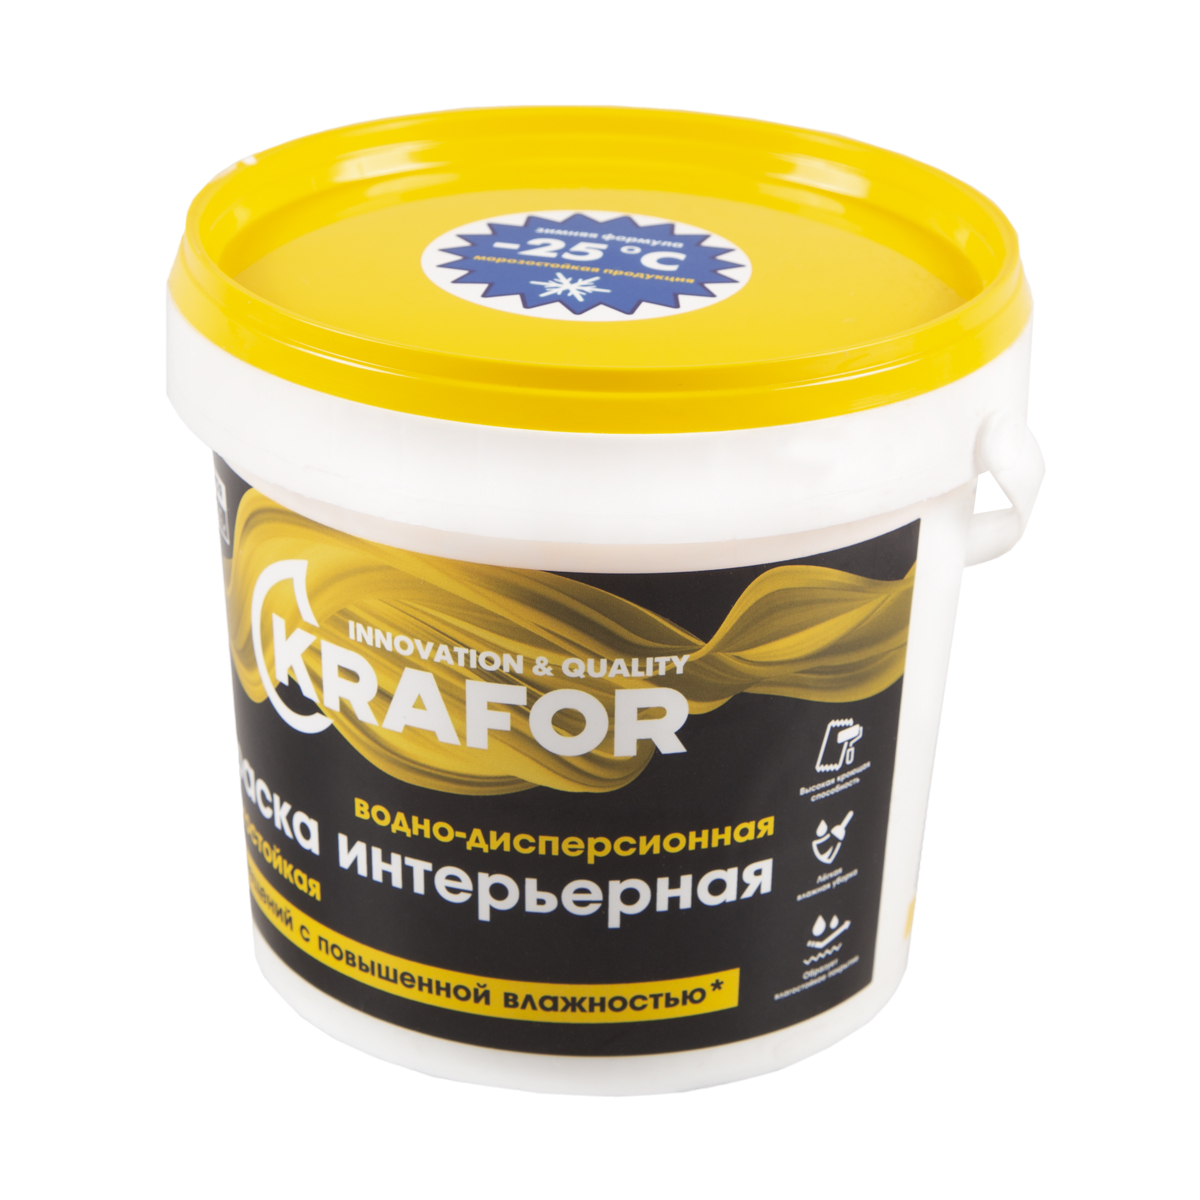 Краска в/д латексная  интер. влагостойкая  1,5 кг (1/6) "krafor"   (желт.)